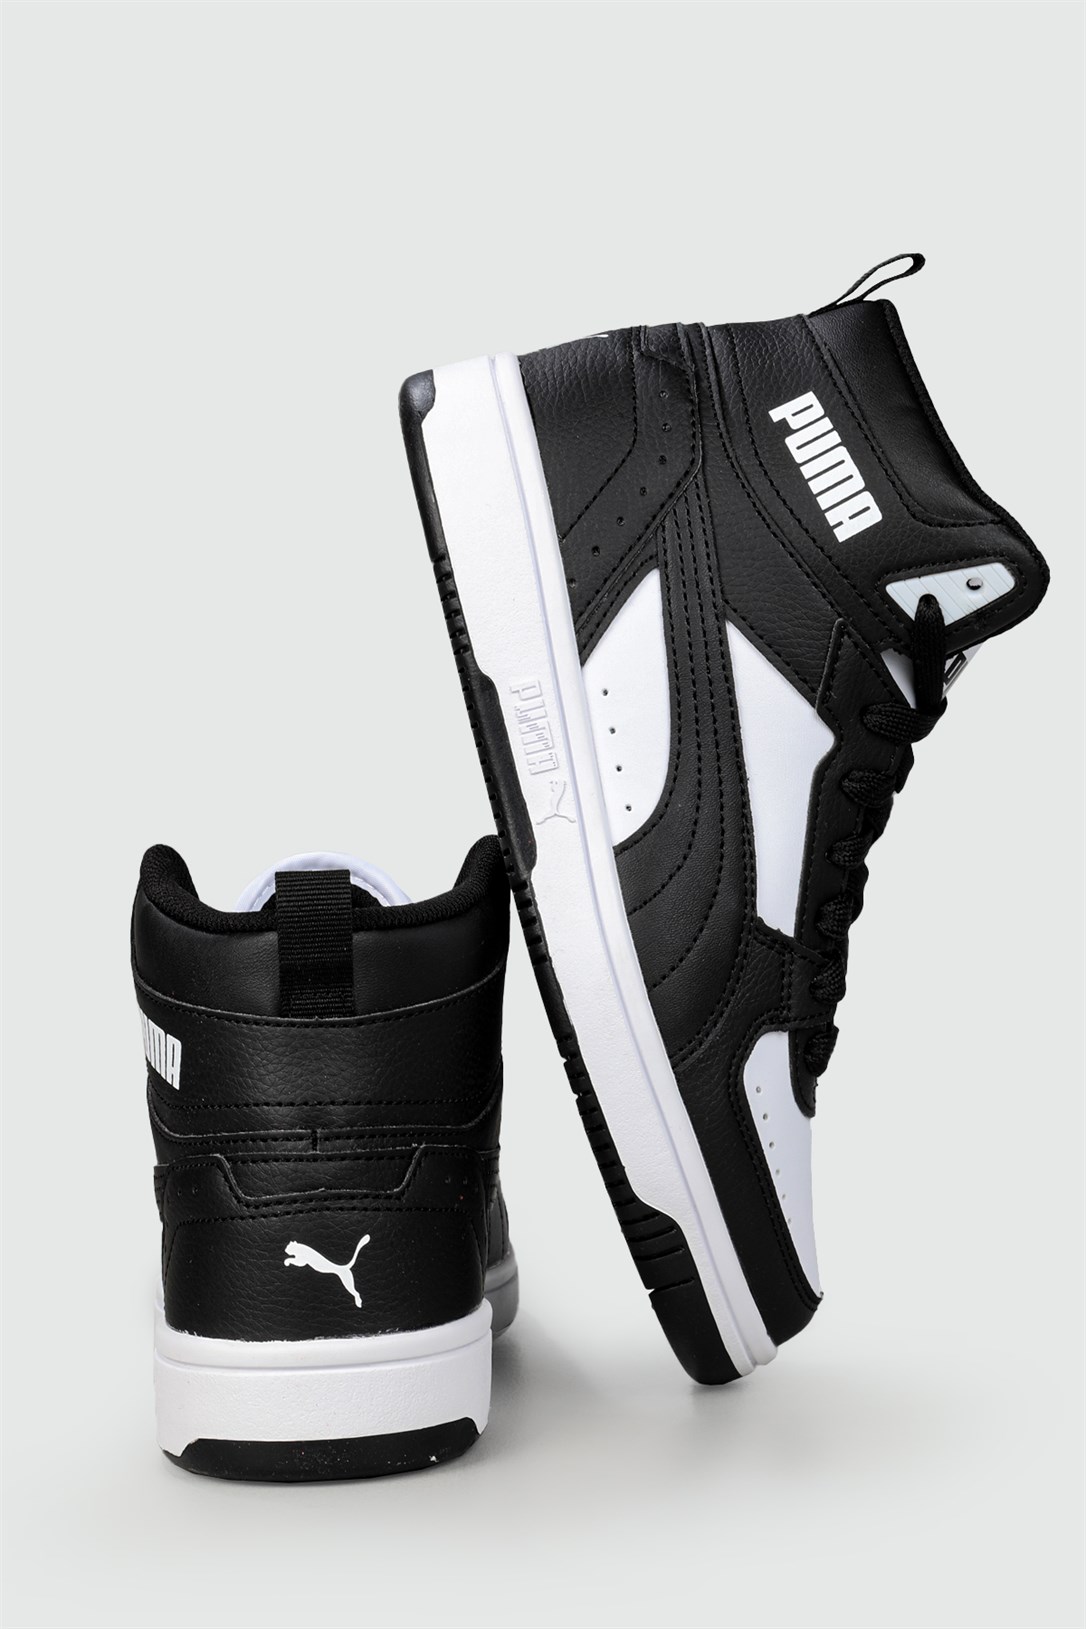 Puma Jordan Boğazlı Siyah Beyaz Unisex Spor Ayakkabı 374687-01 JR